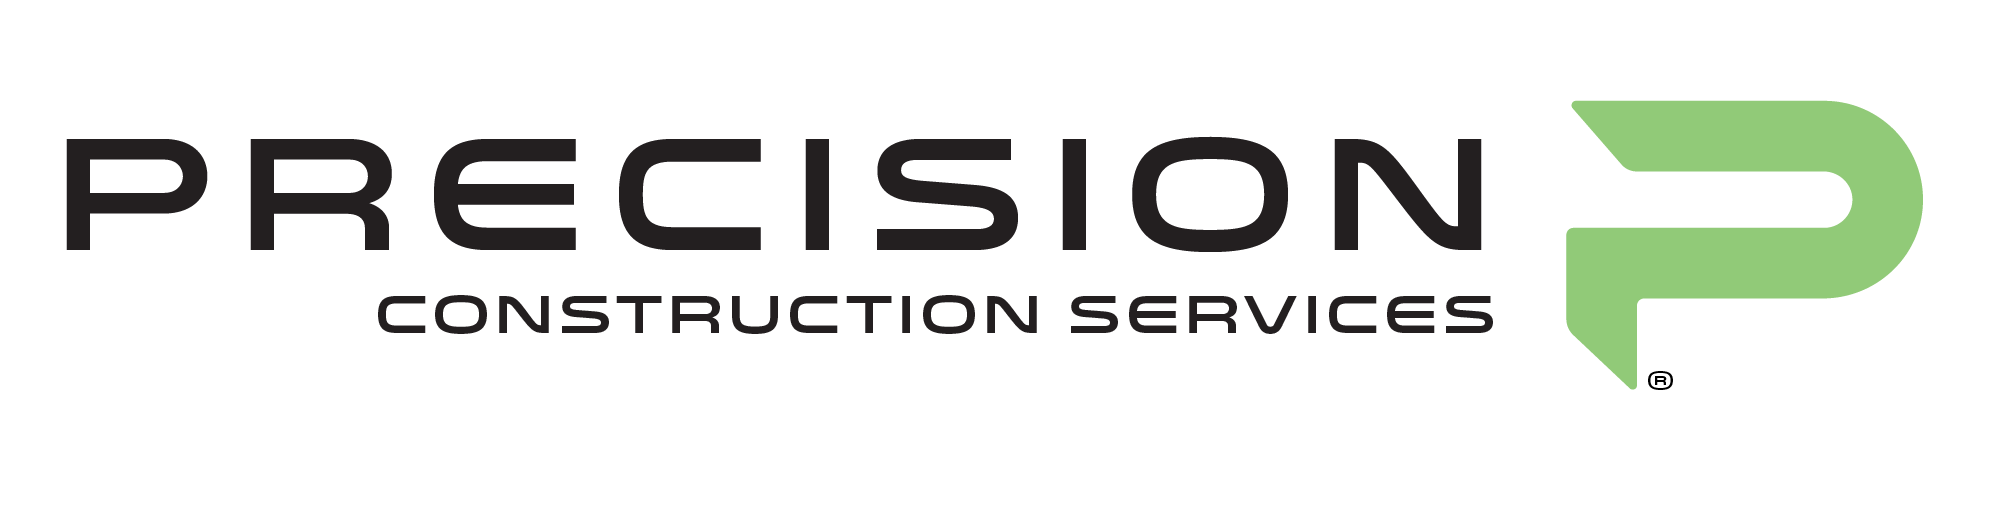 Precision Construction Services Logo